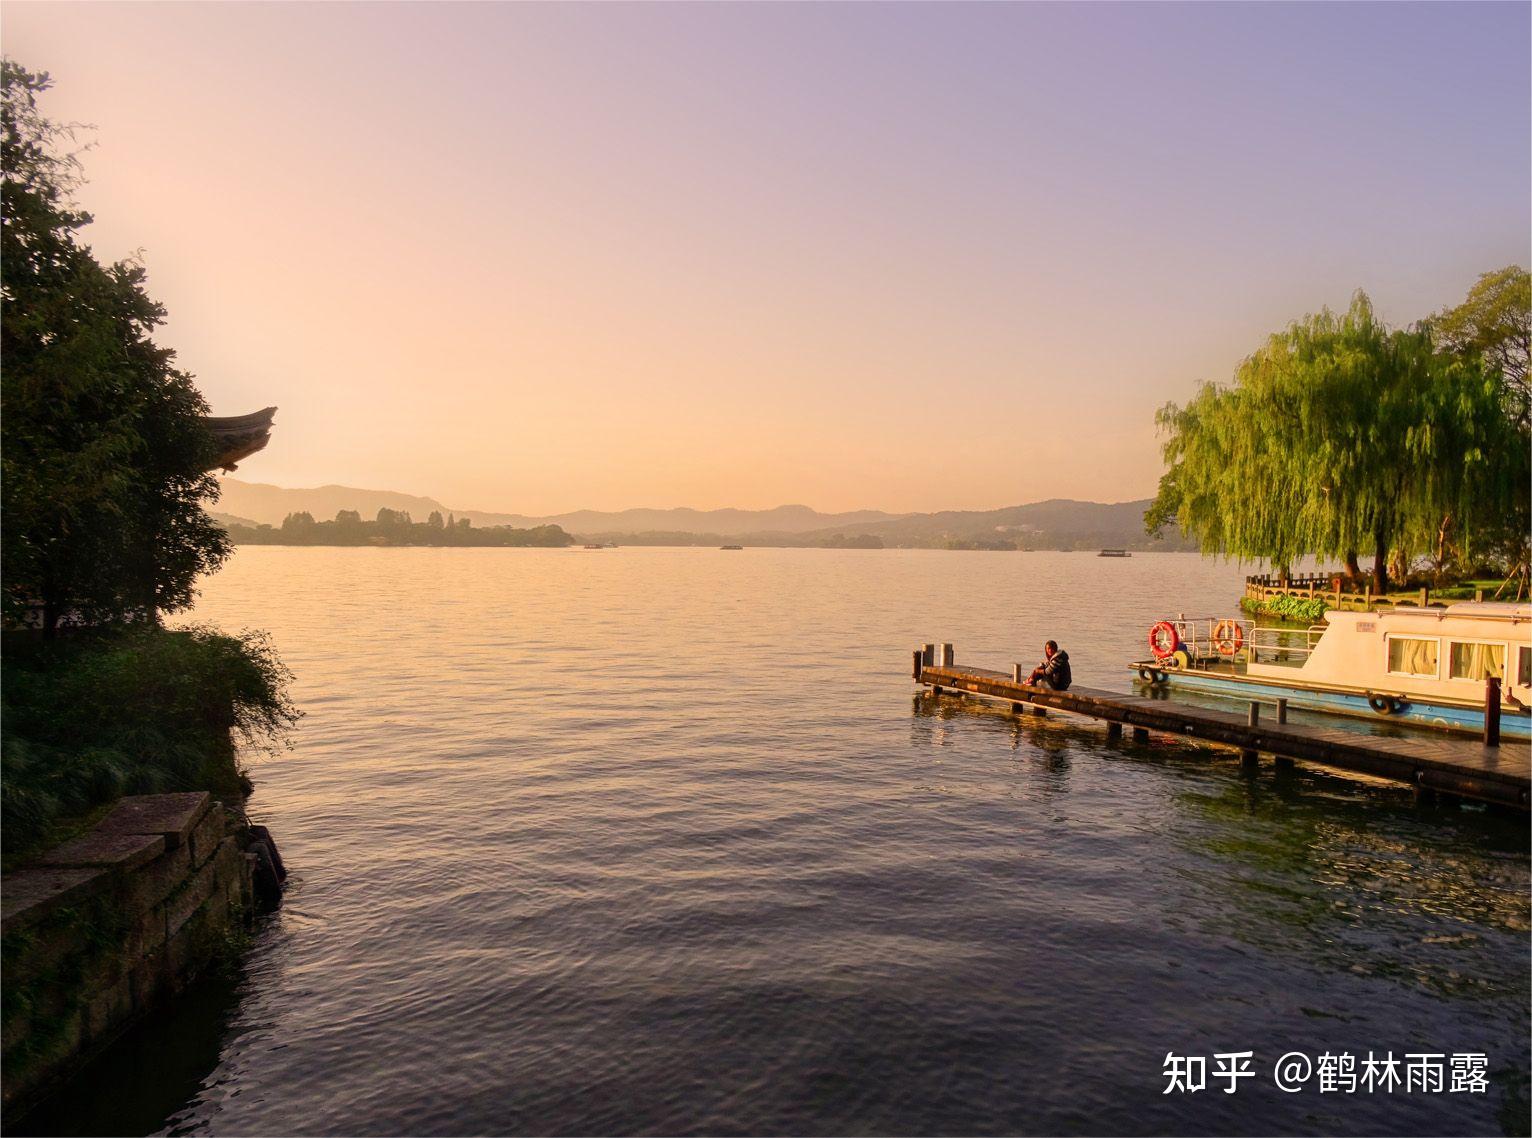 雷峰塔又名皇妃塔,西关砖塔,位于浙江省会杭州市西湖风景区南岸夕照